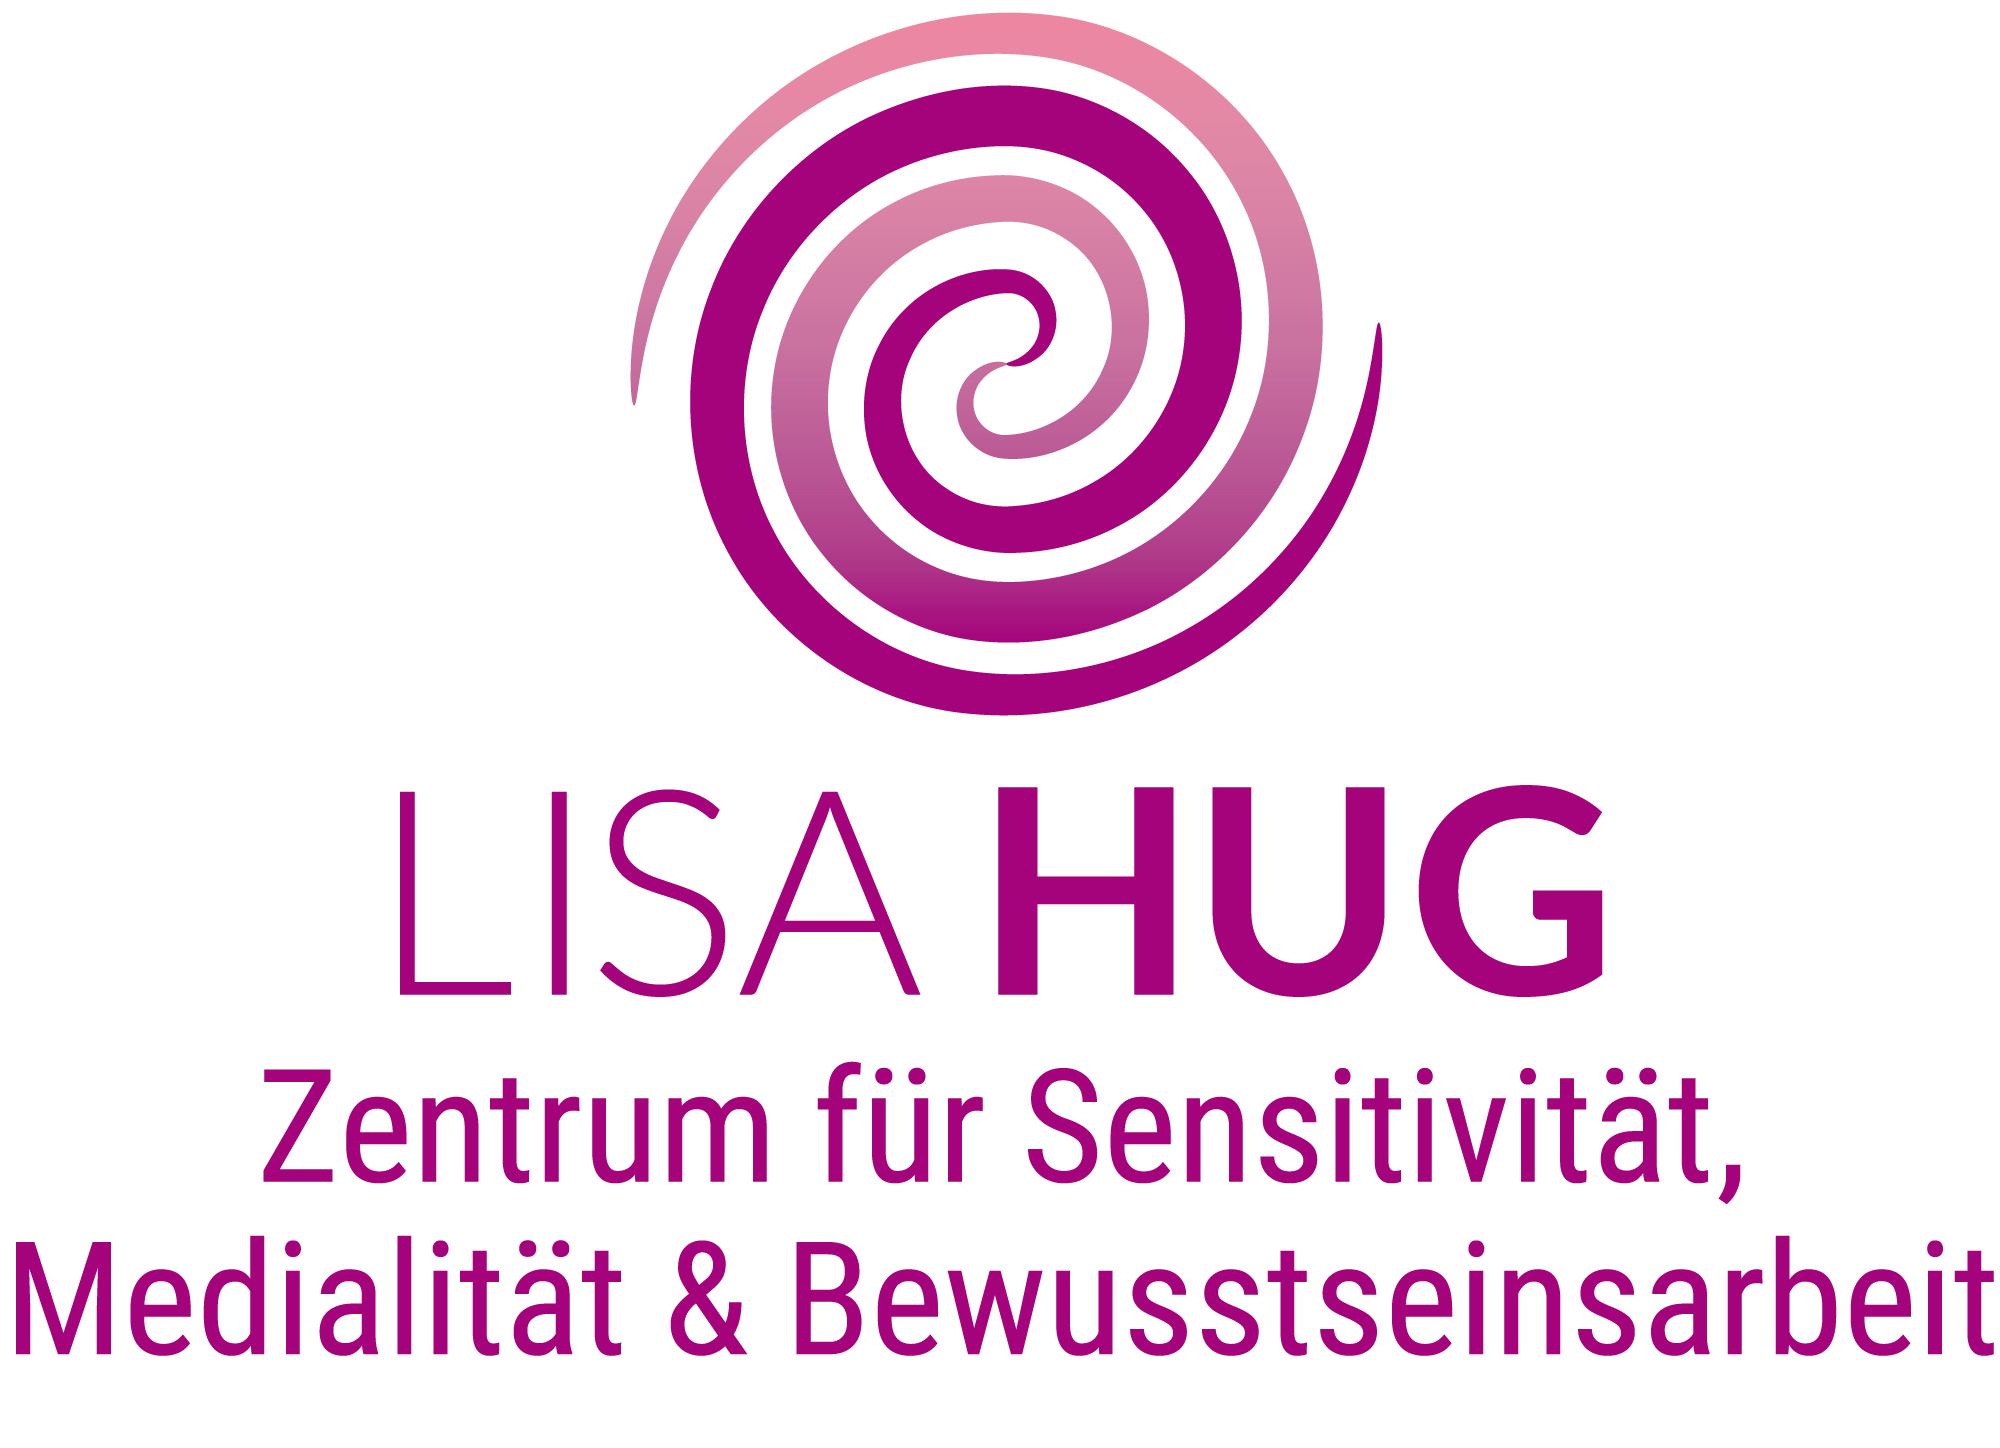 Lisa Hug